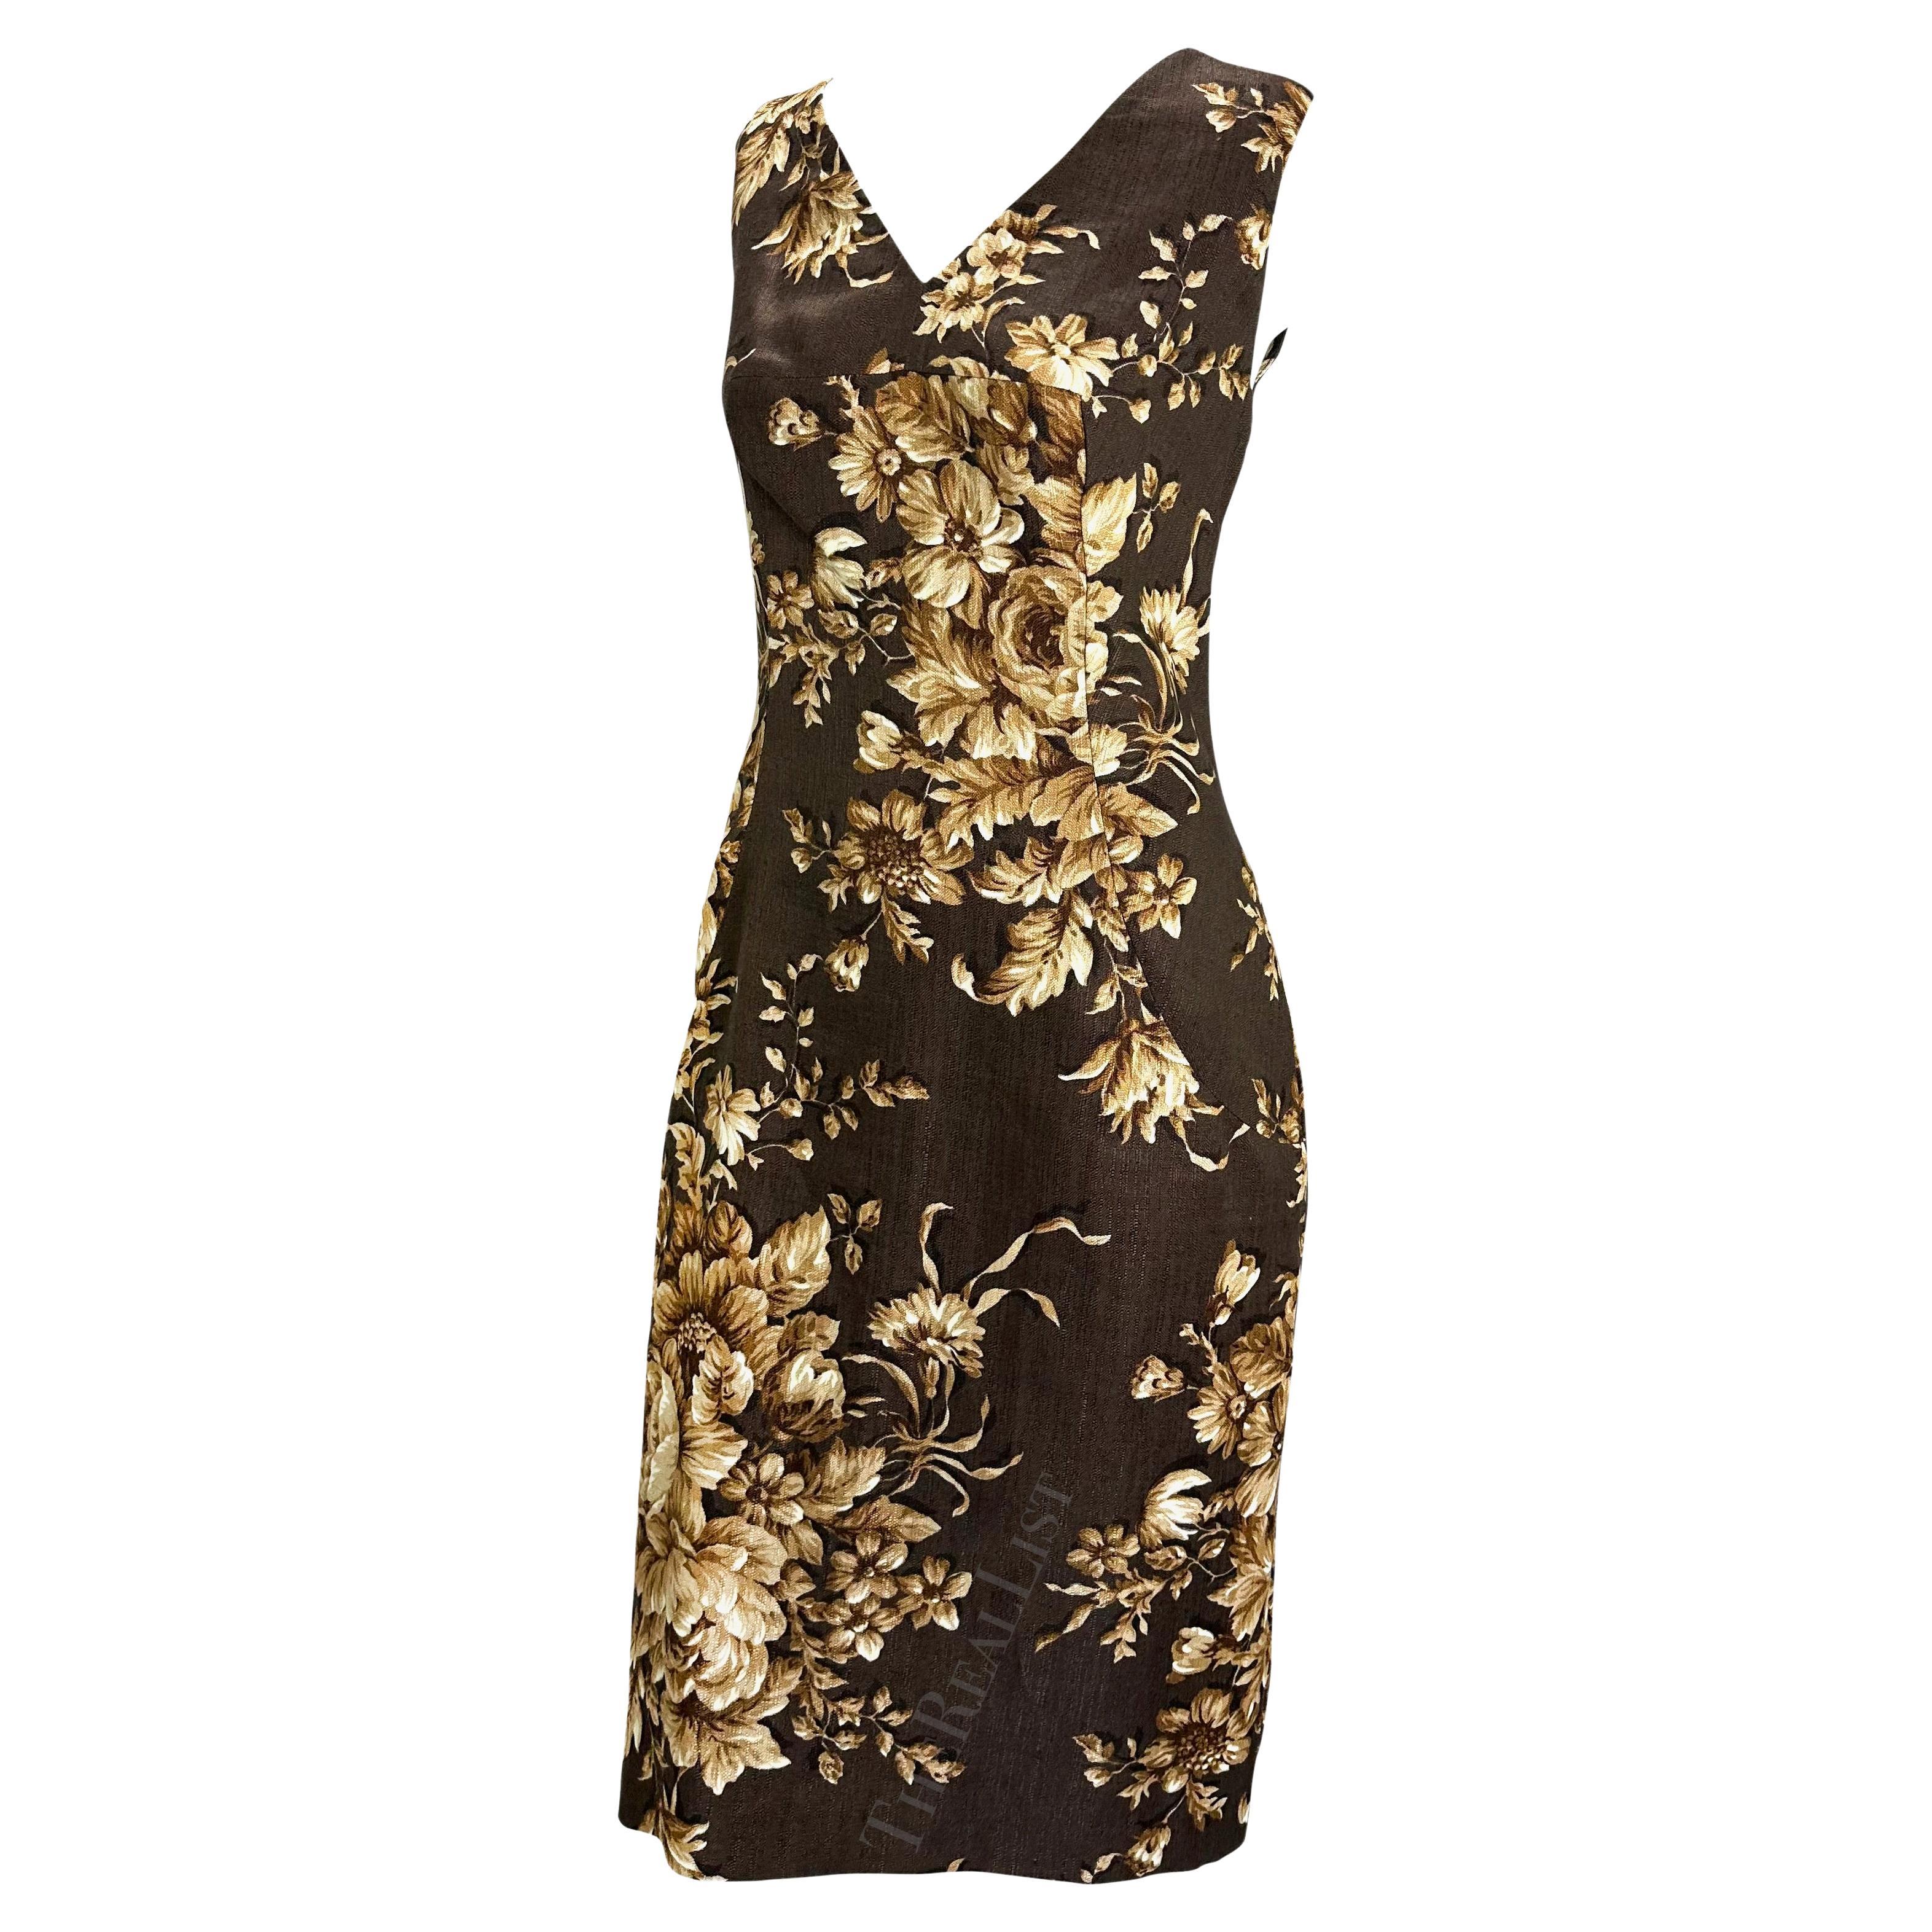 Voici une fabuleuse robe sans manches Dolce and Gabbana à fleurs brunes. Issue de la collection printemps/été 1997, cette robe présente un imprimé floral qui a été largement utilisé sur les podiums de la saison.

Mesures approximatives :
Taille - 